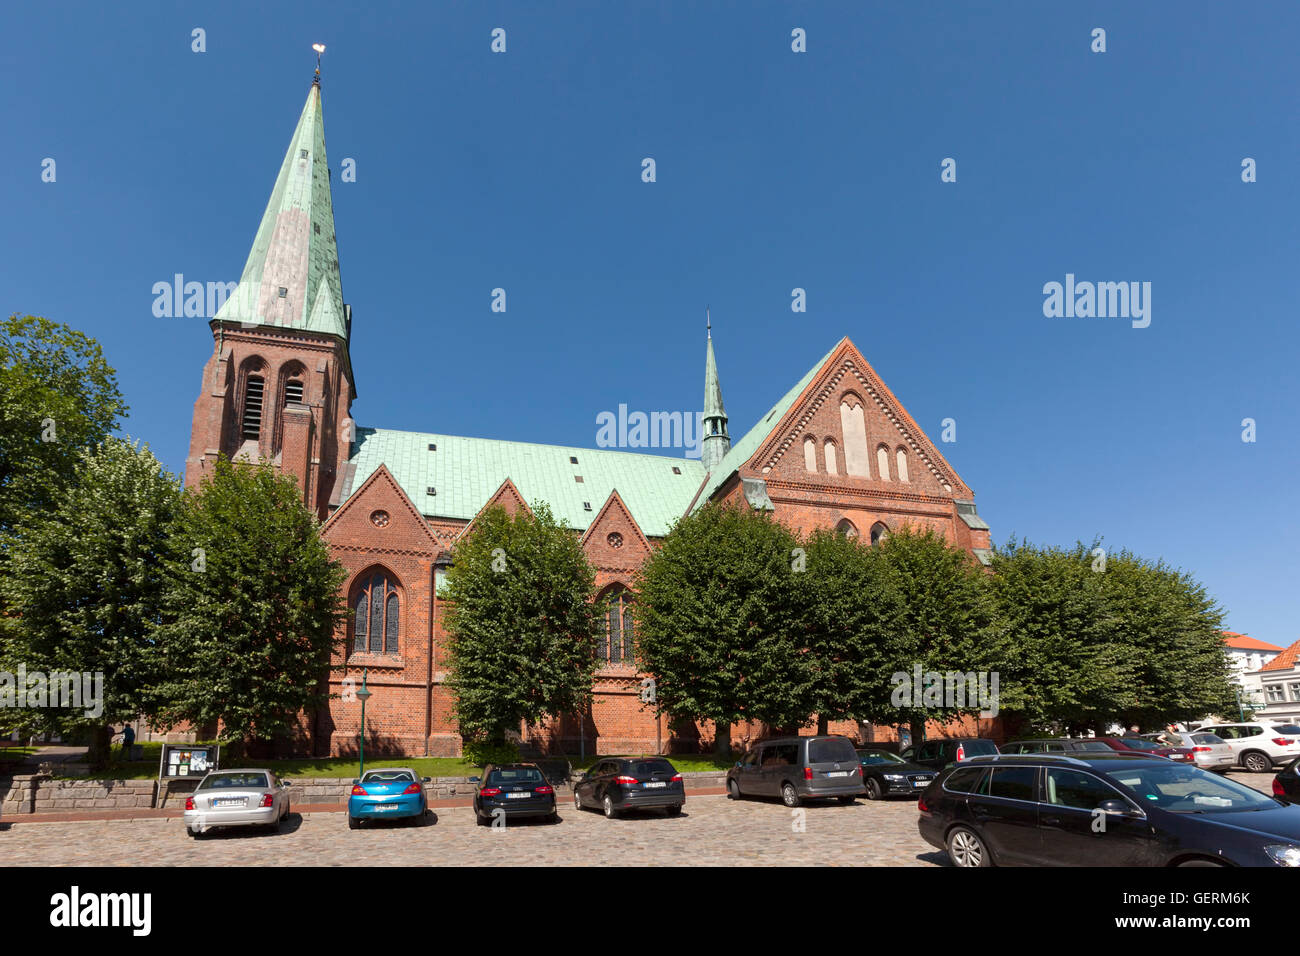 Meldorf, Allemagne - 20 juillet 2016 : St.-Johannis church à la place centrale de Meldorf. Banque D'Images